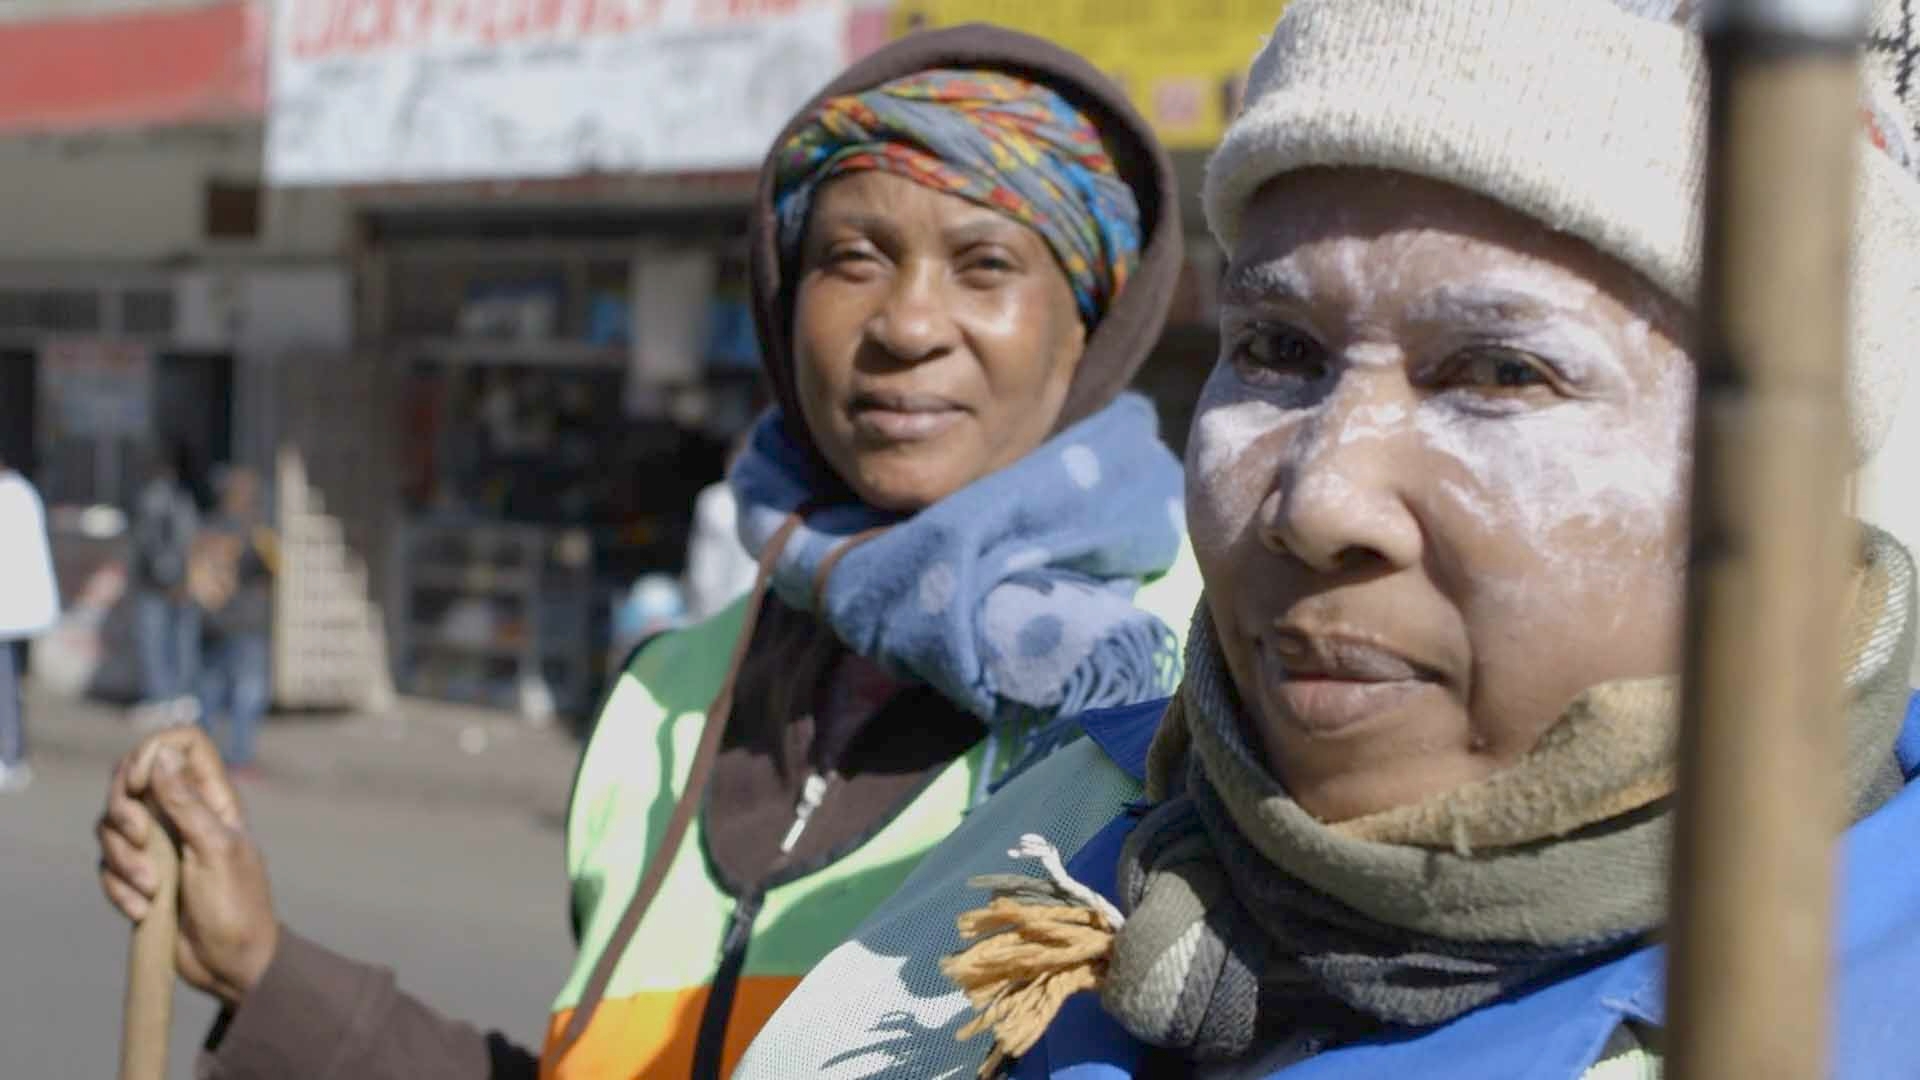 Afrique du Sud, portraits chromatiques - Episode 1 : Centre-ville